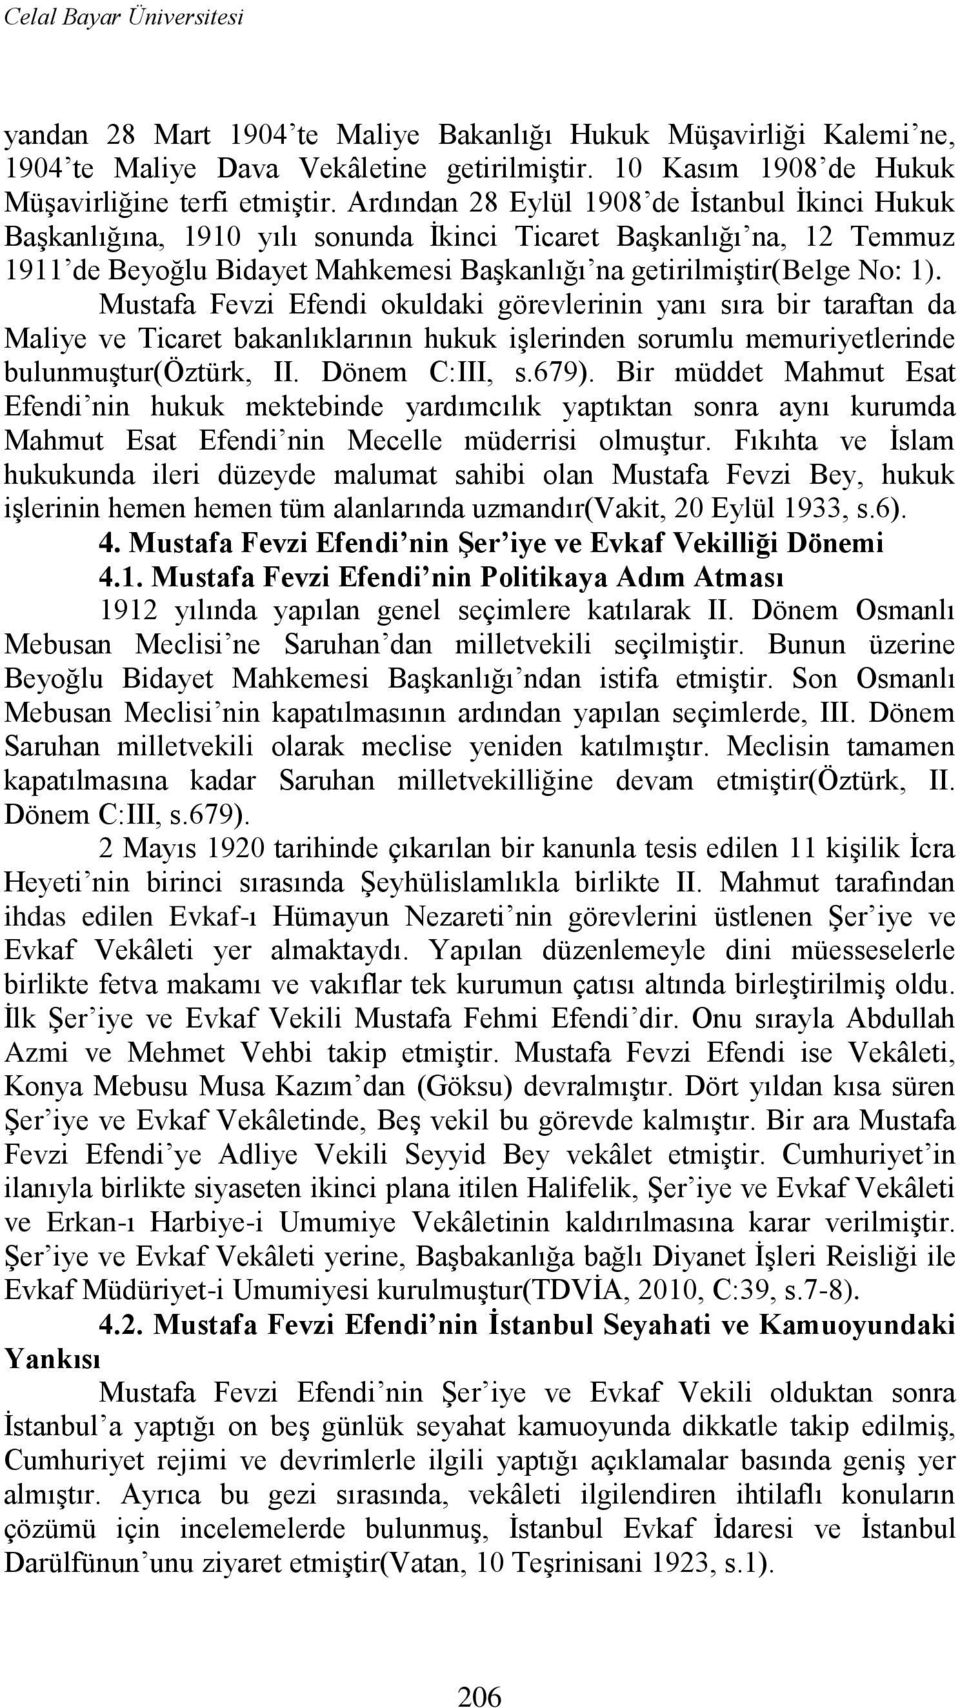 Mustafa Fevzi Efendi okuldaki görevlerinin yanı sıra bir taraftan da Maliye ve Ticaret bakanlıklarının hukuk iģlerinden sorumlu memuriyetlerinde bulunmuģtur(öztürk, II. Dönem C:III, s.679).